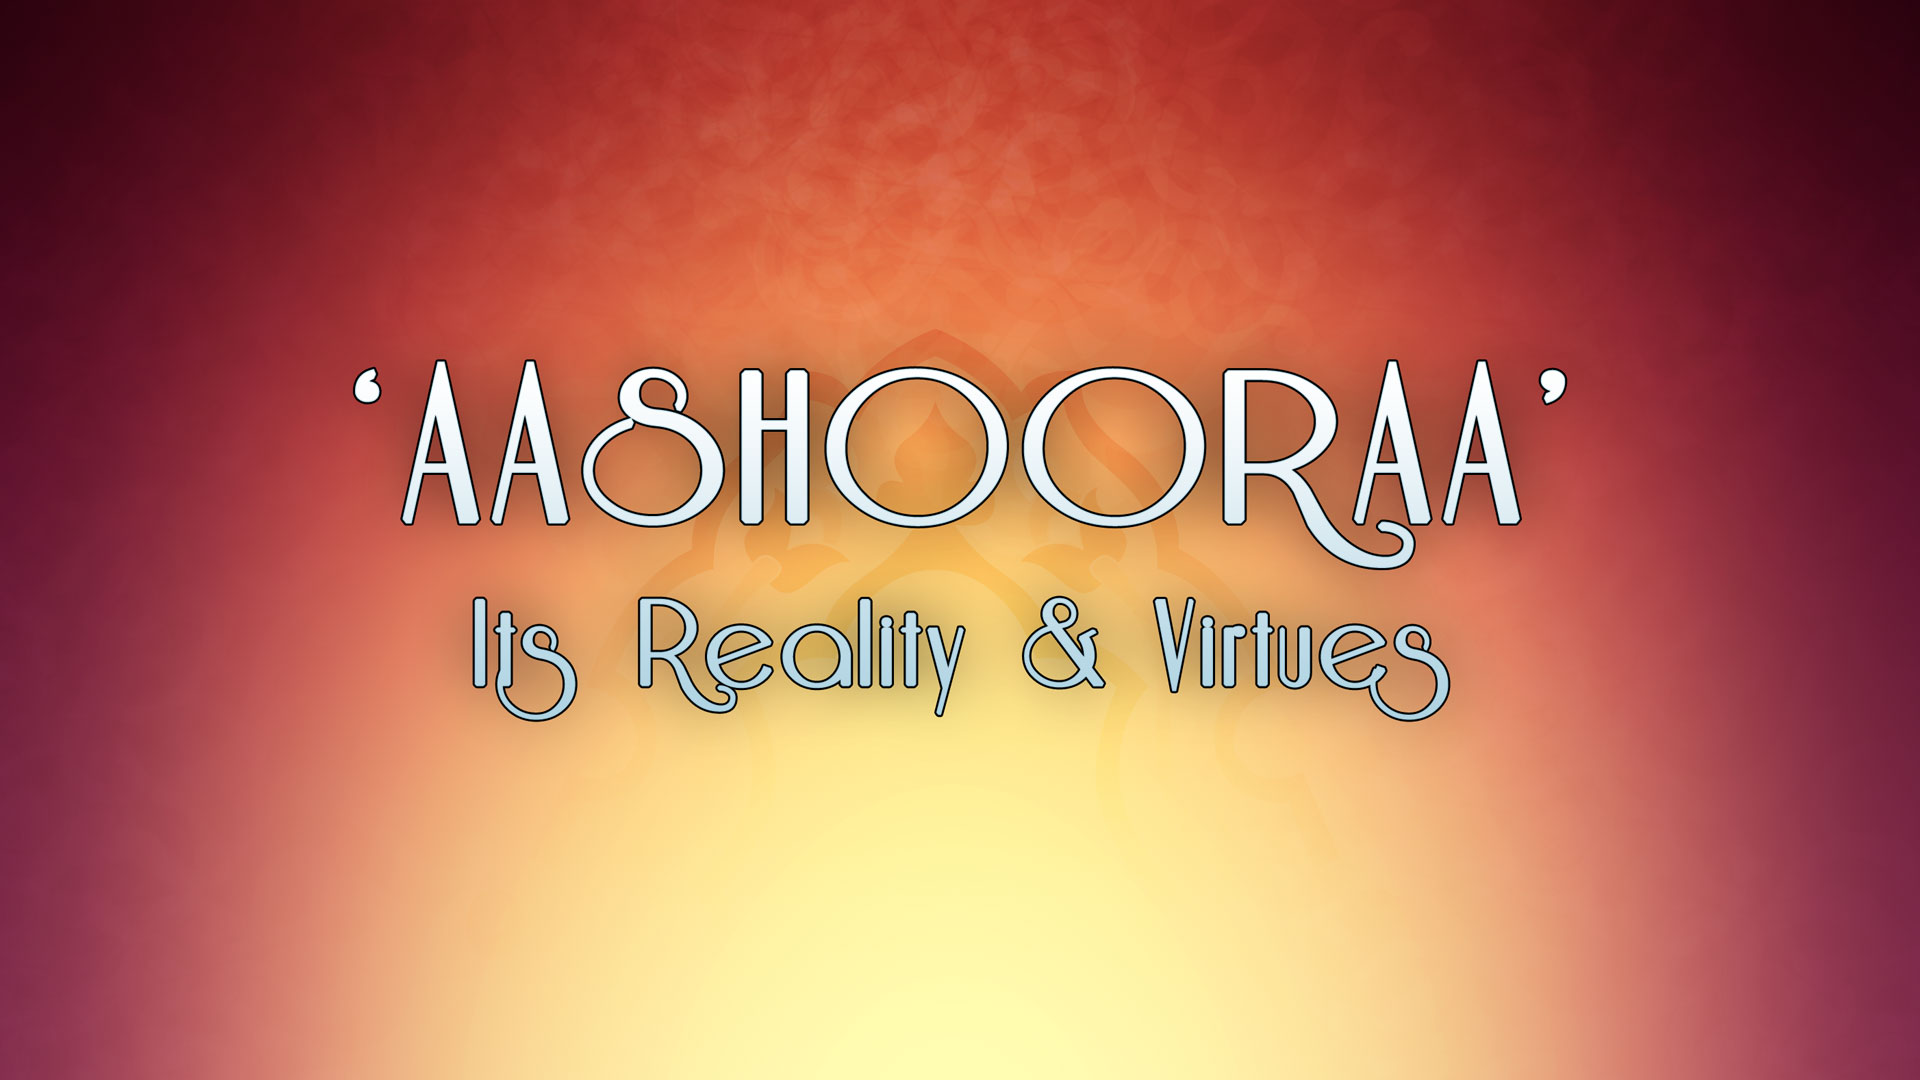 ashura-aashooraa-muharram-reality-virtues_slider